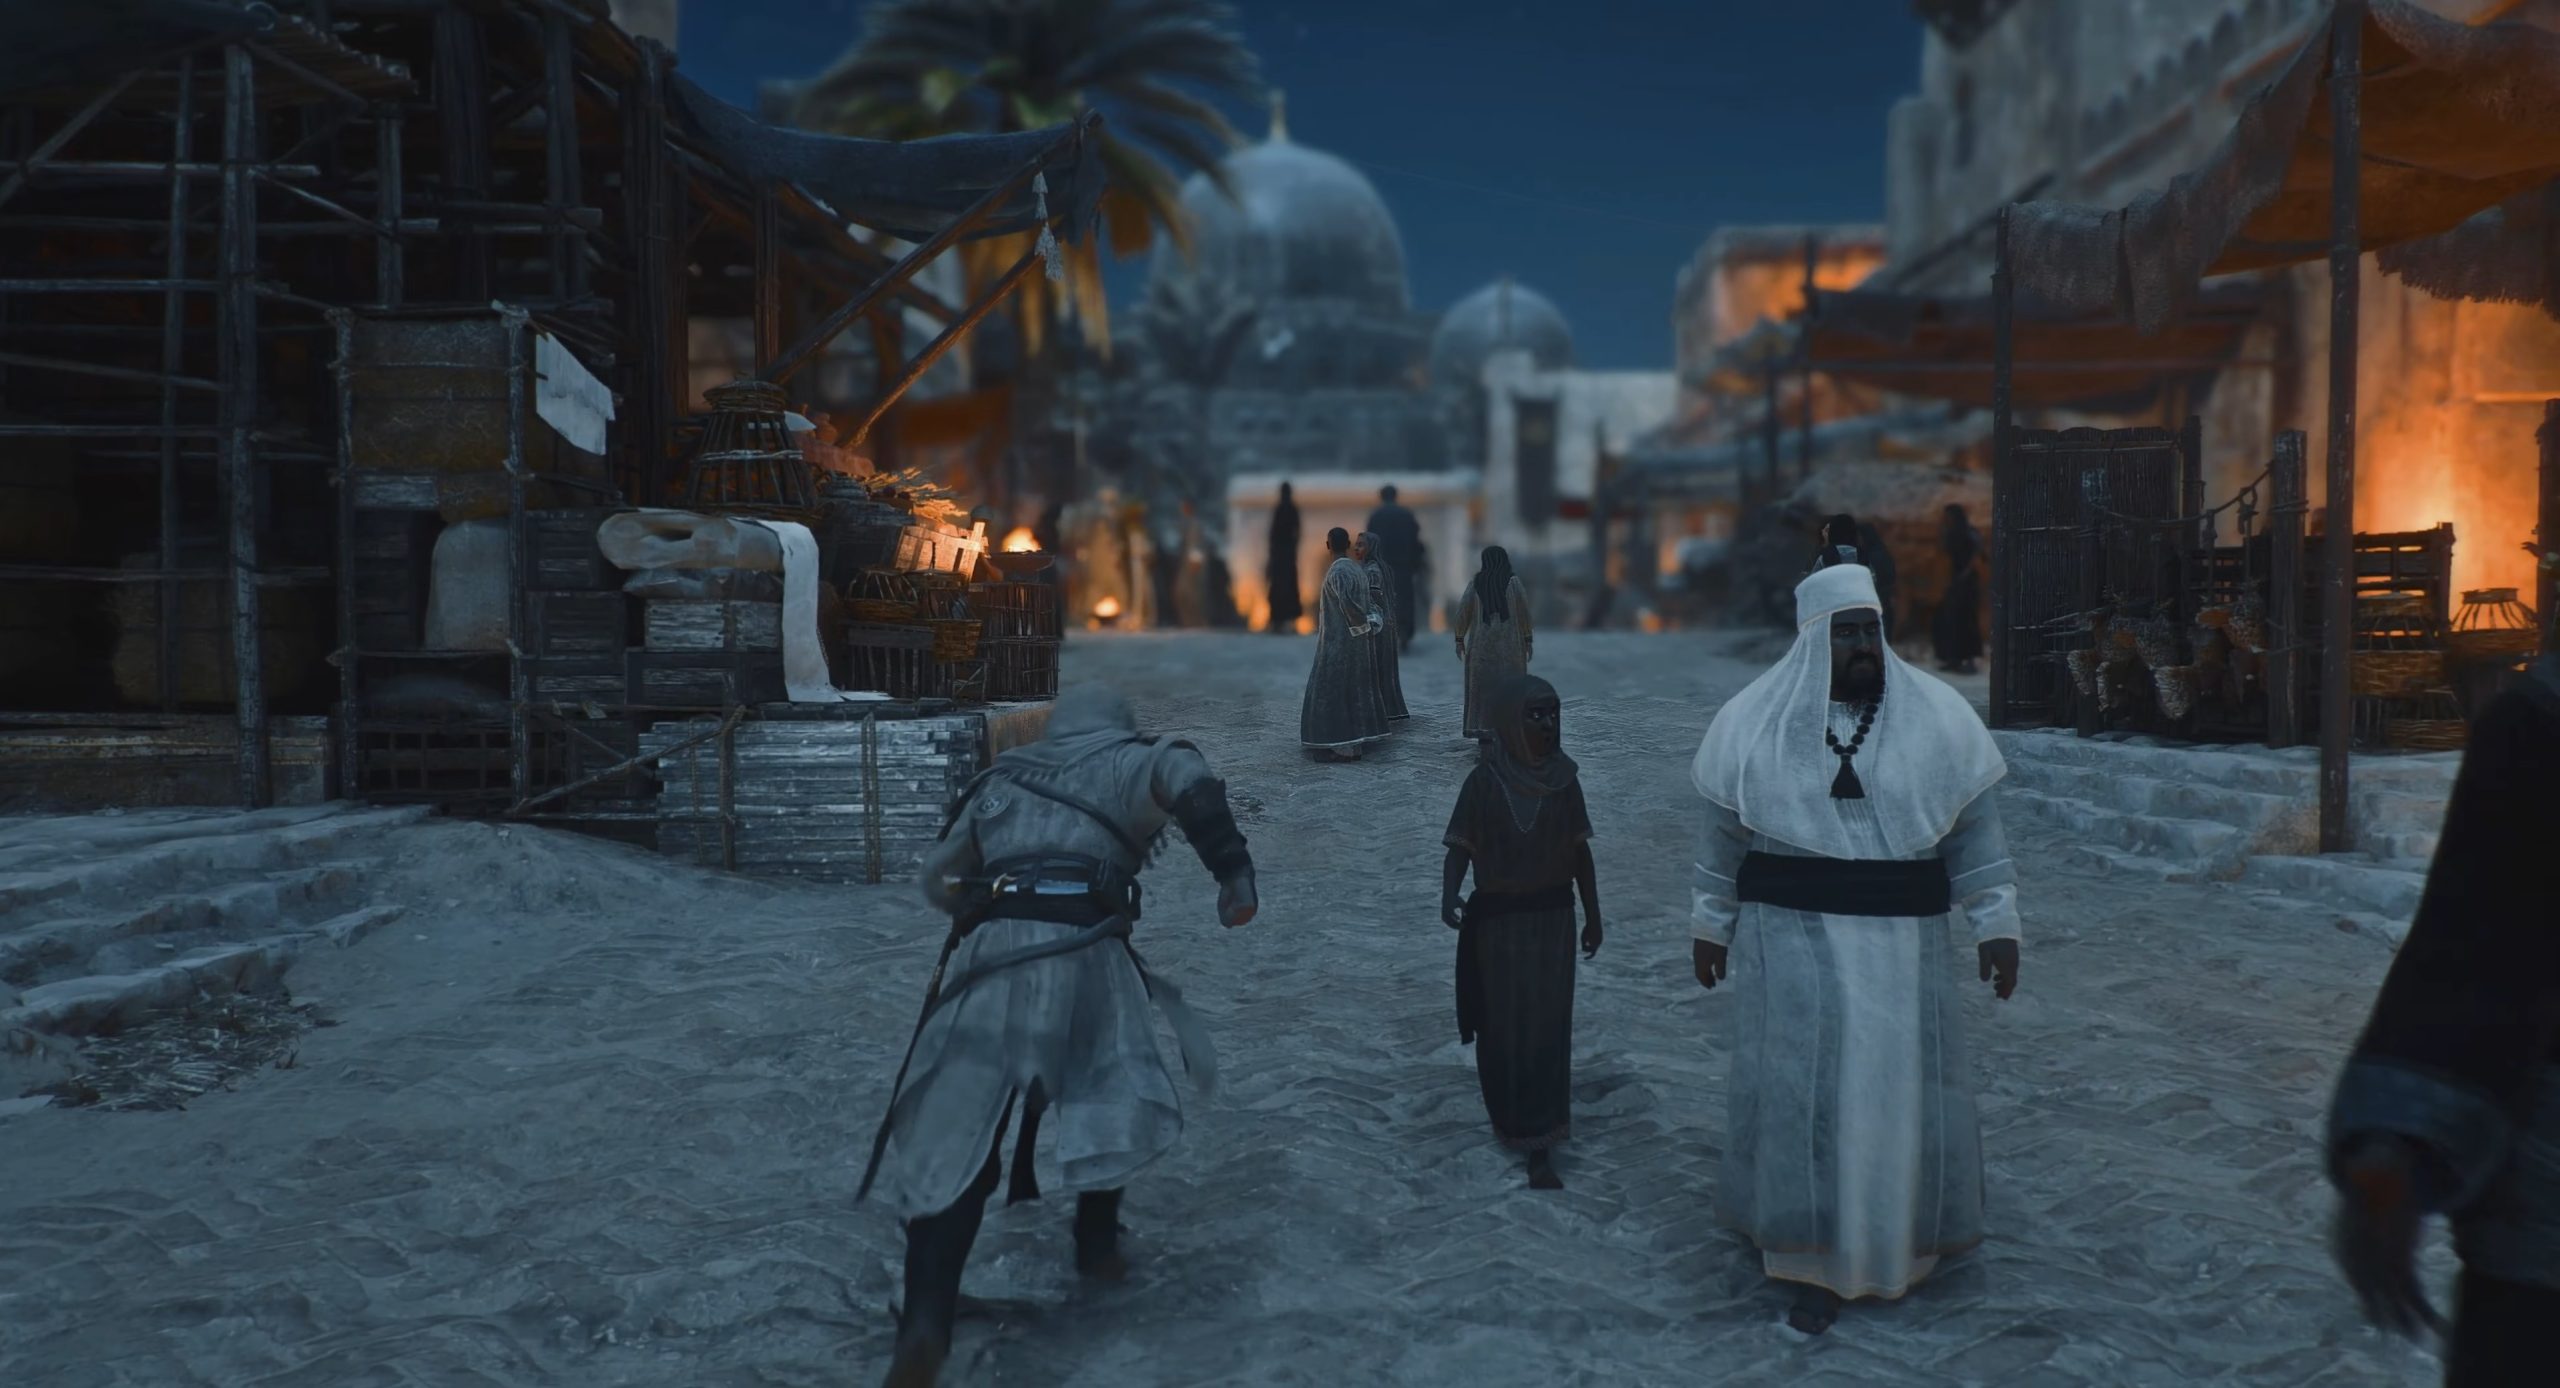 Assassin’s Creed Mirage با ردیابی کامل پرتو با وضوح 8K بسیار خیره کننده به نظر می رسد